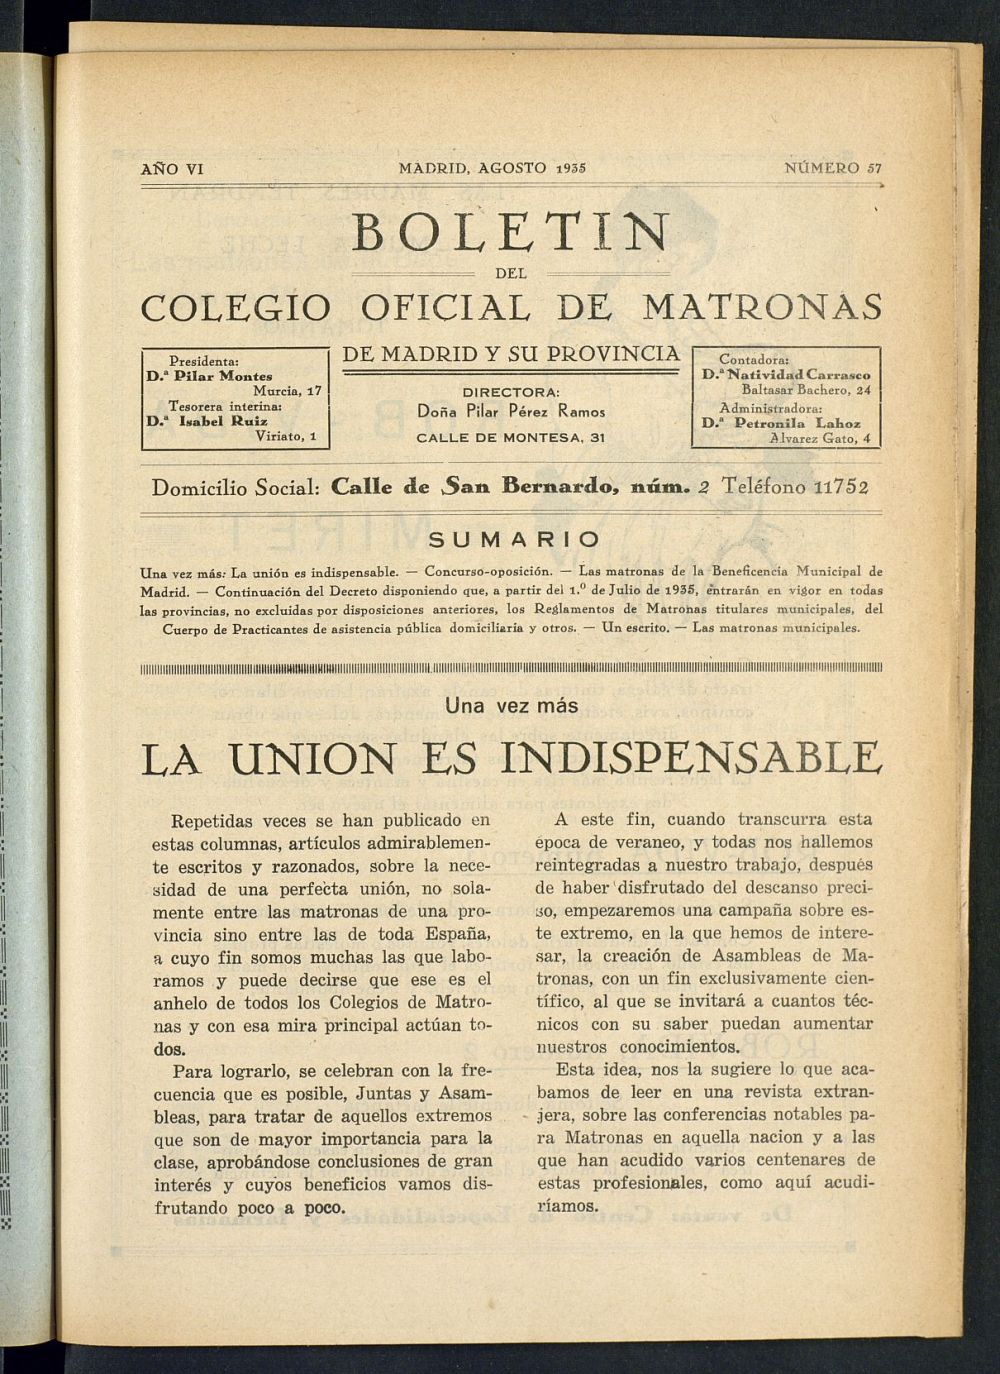 Boletn del Colegio Oficial de Matronas de Madrid y su Provincia de agosto de 1935